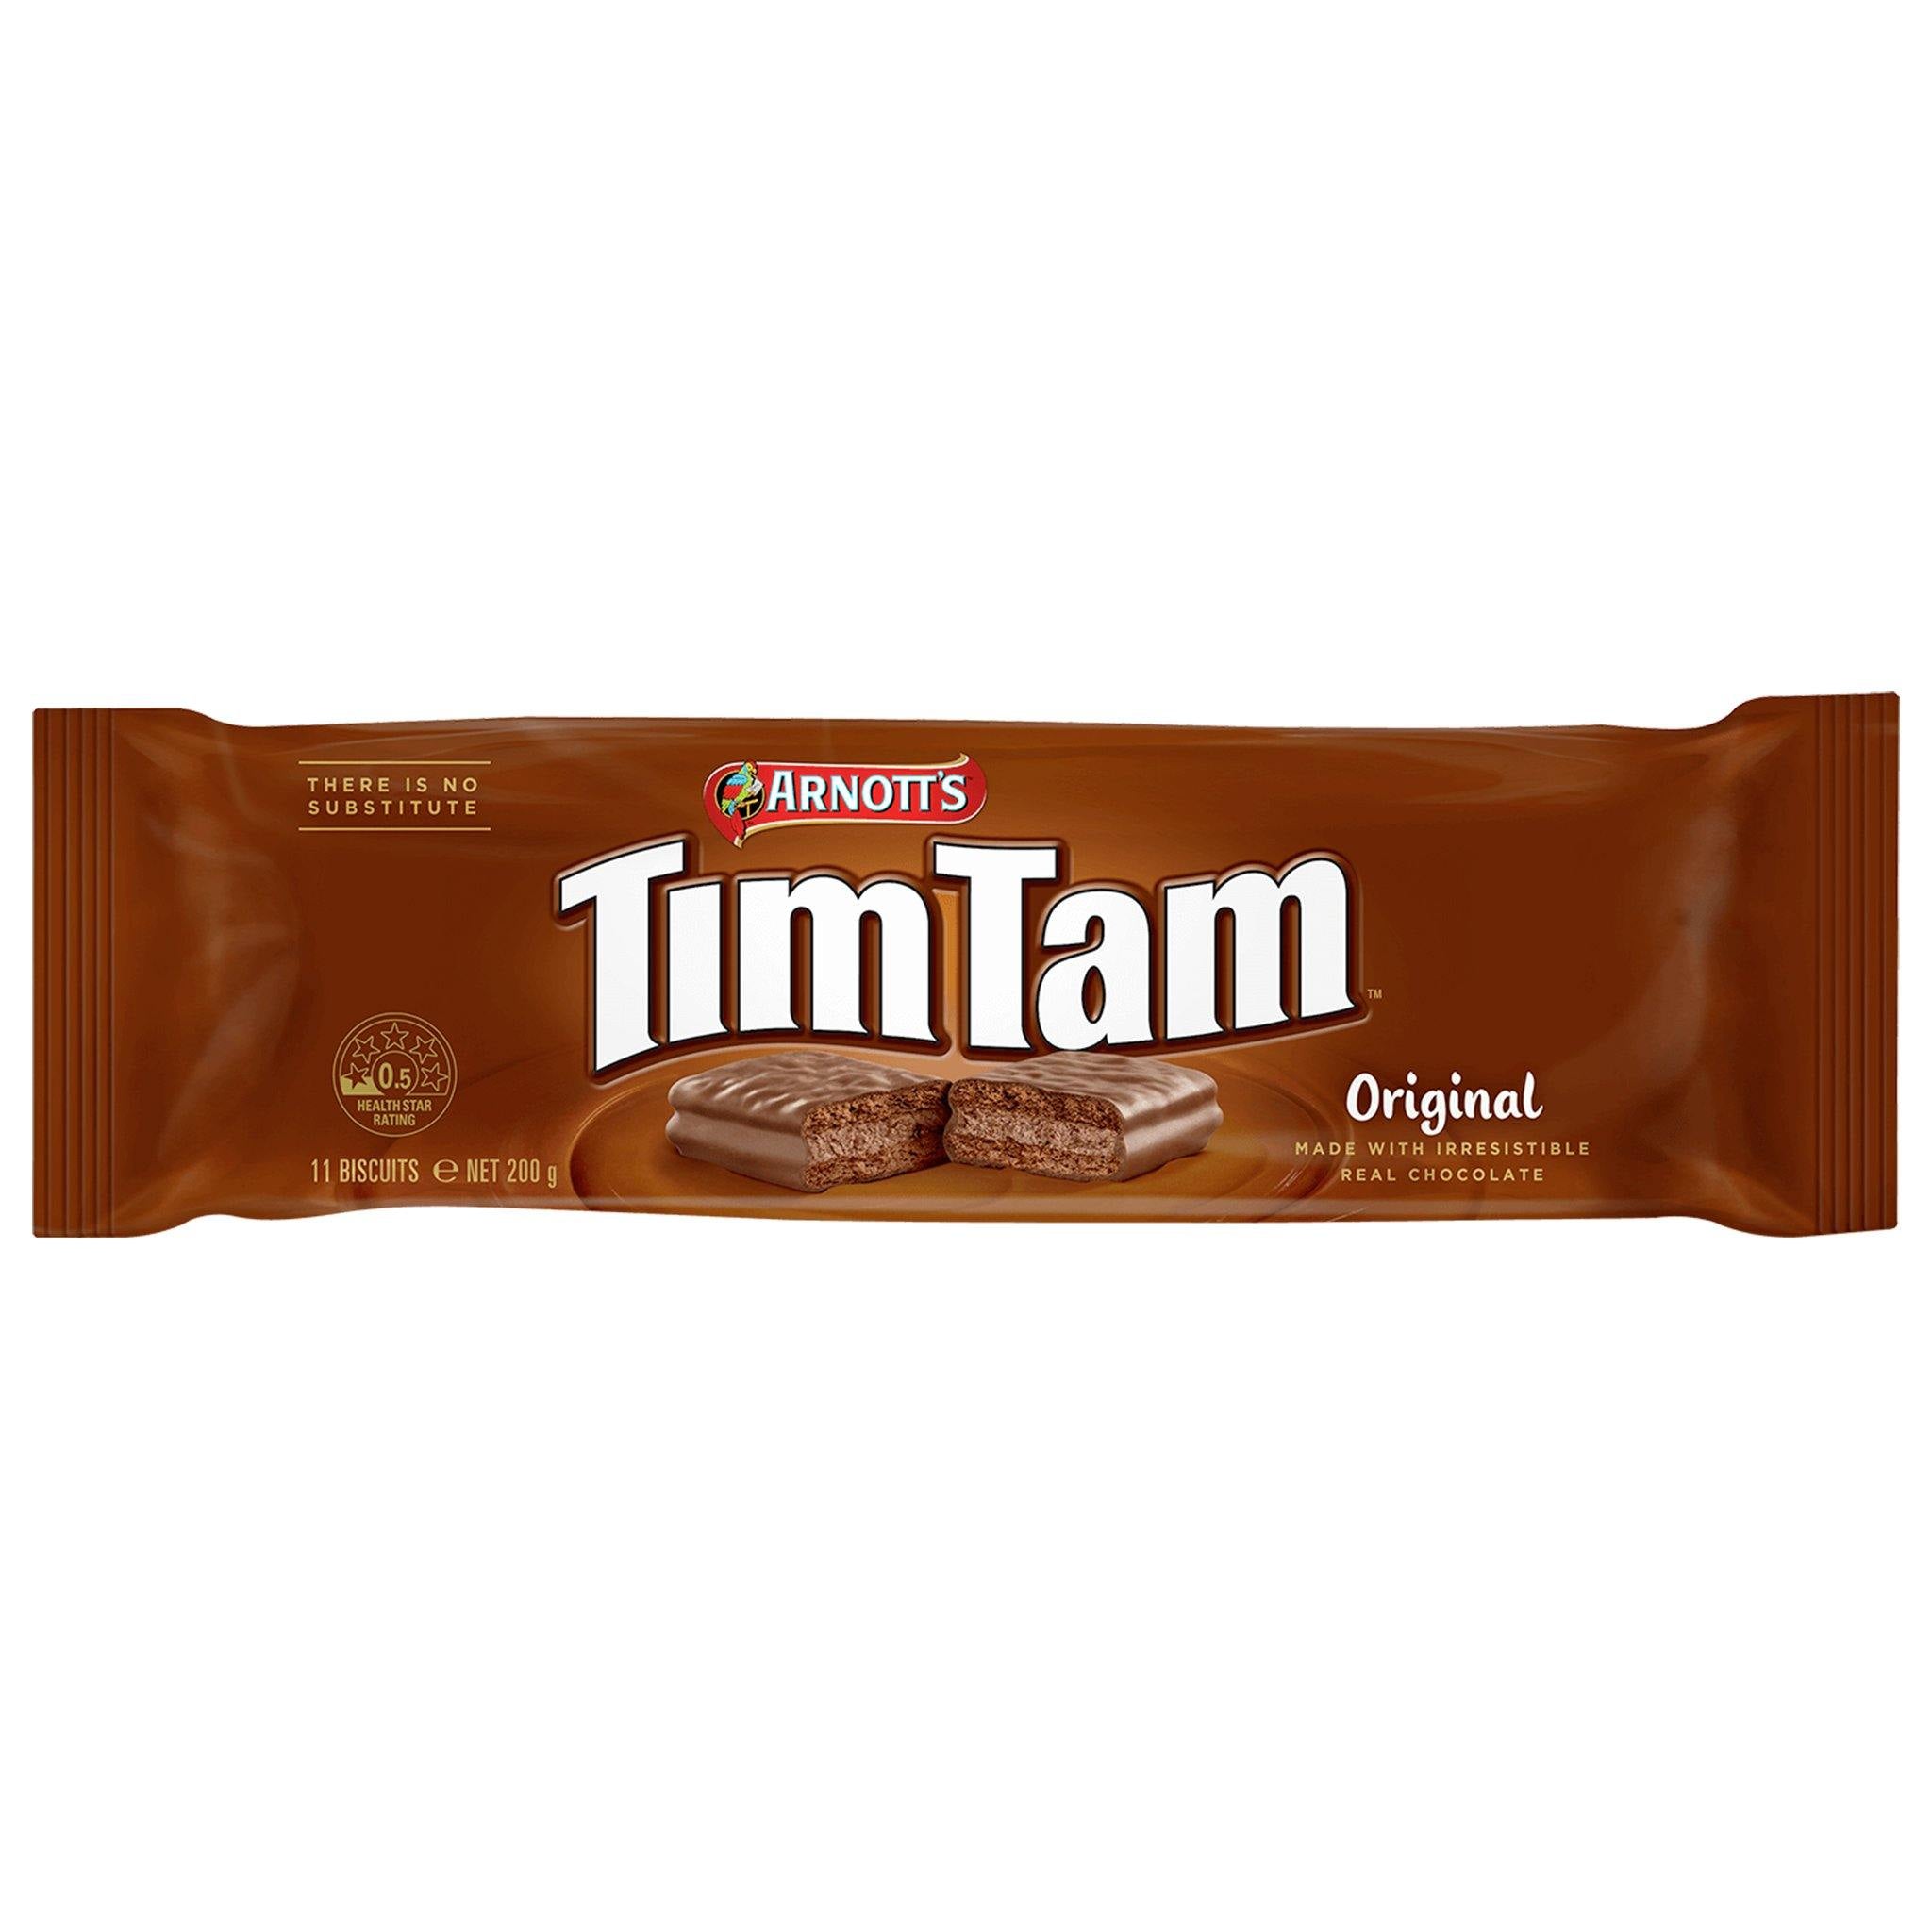 Tim Tam Original - Australia - Sweet Exotics